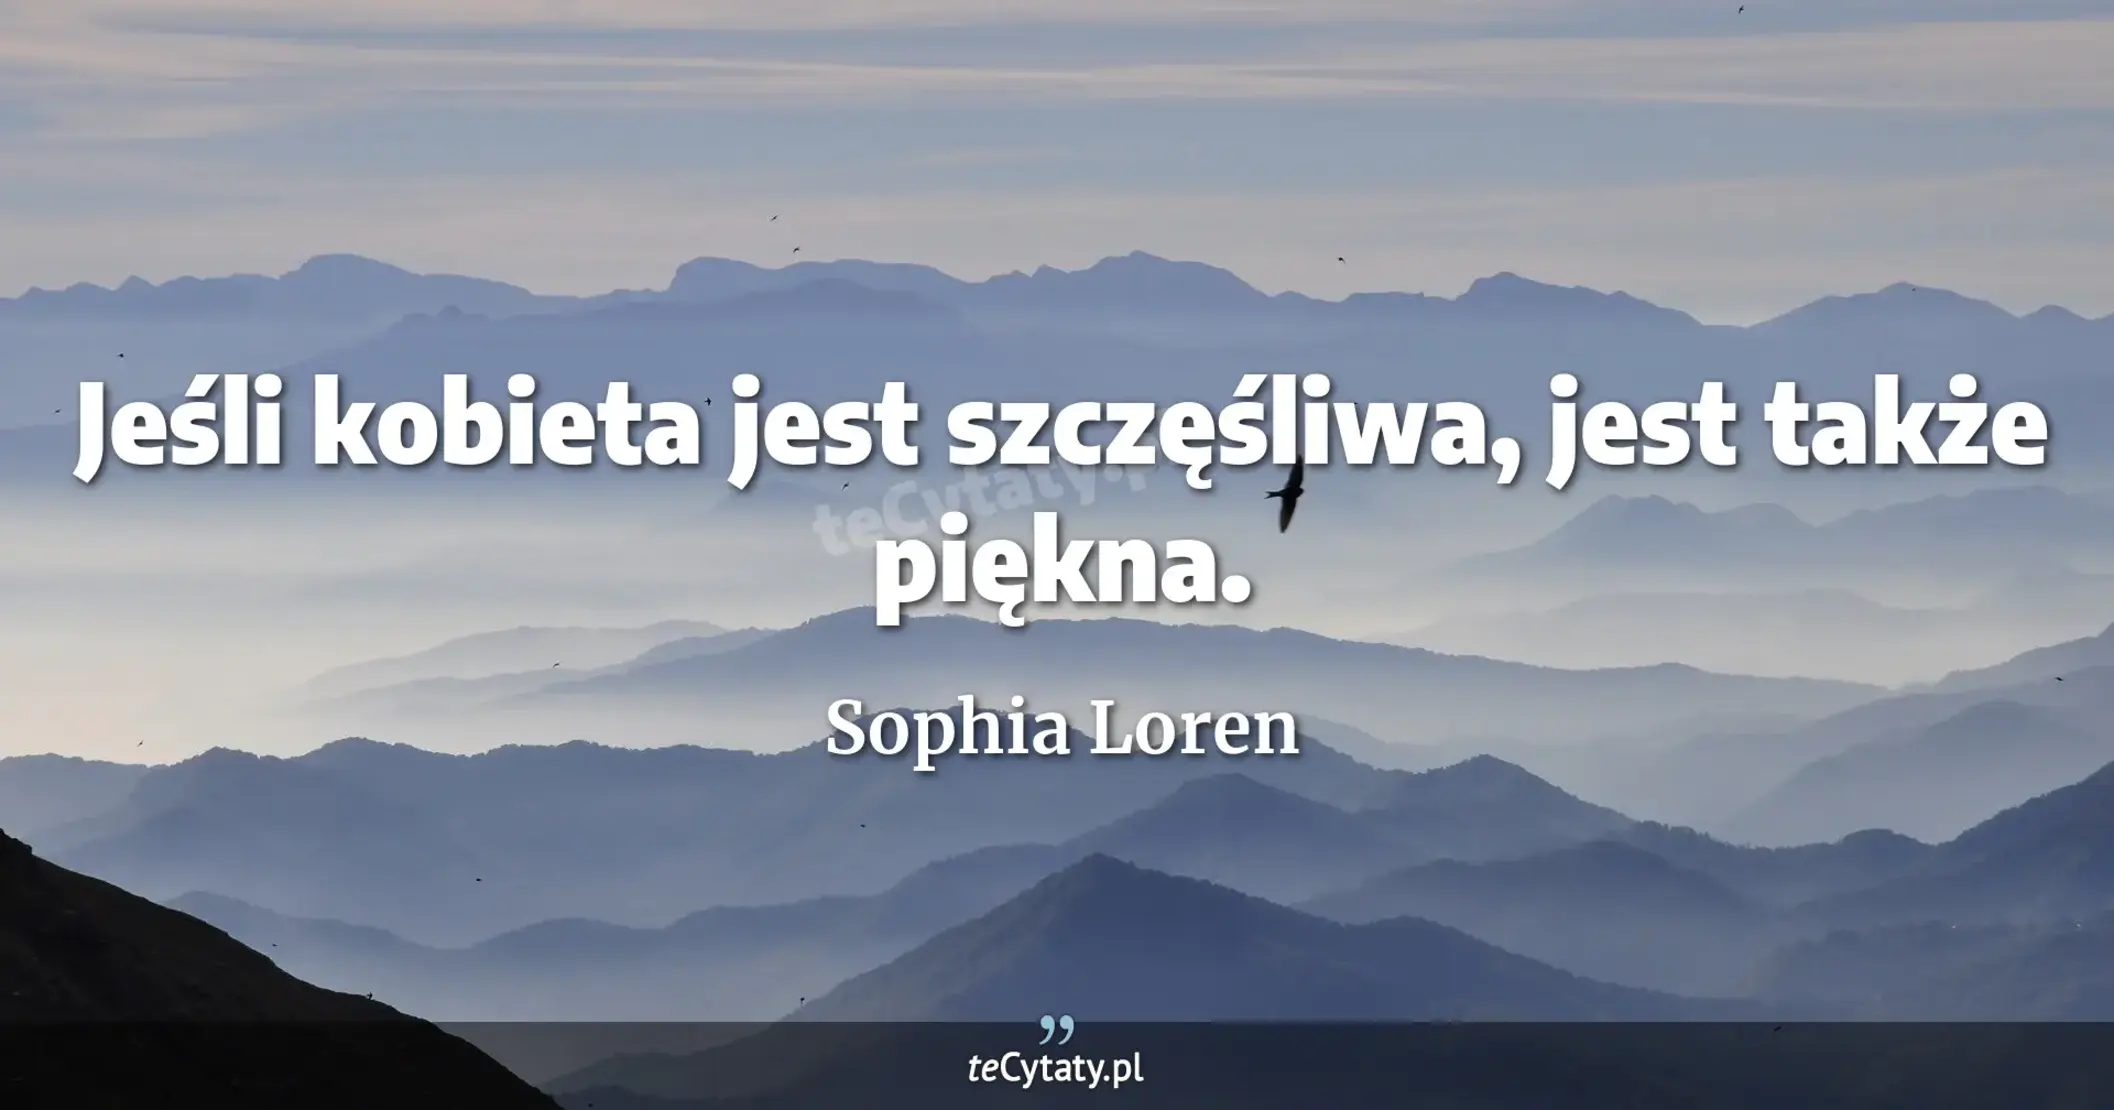 Jeśli kobieta jest szczęśliwa, jest także piękna. - Sophia Loren